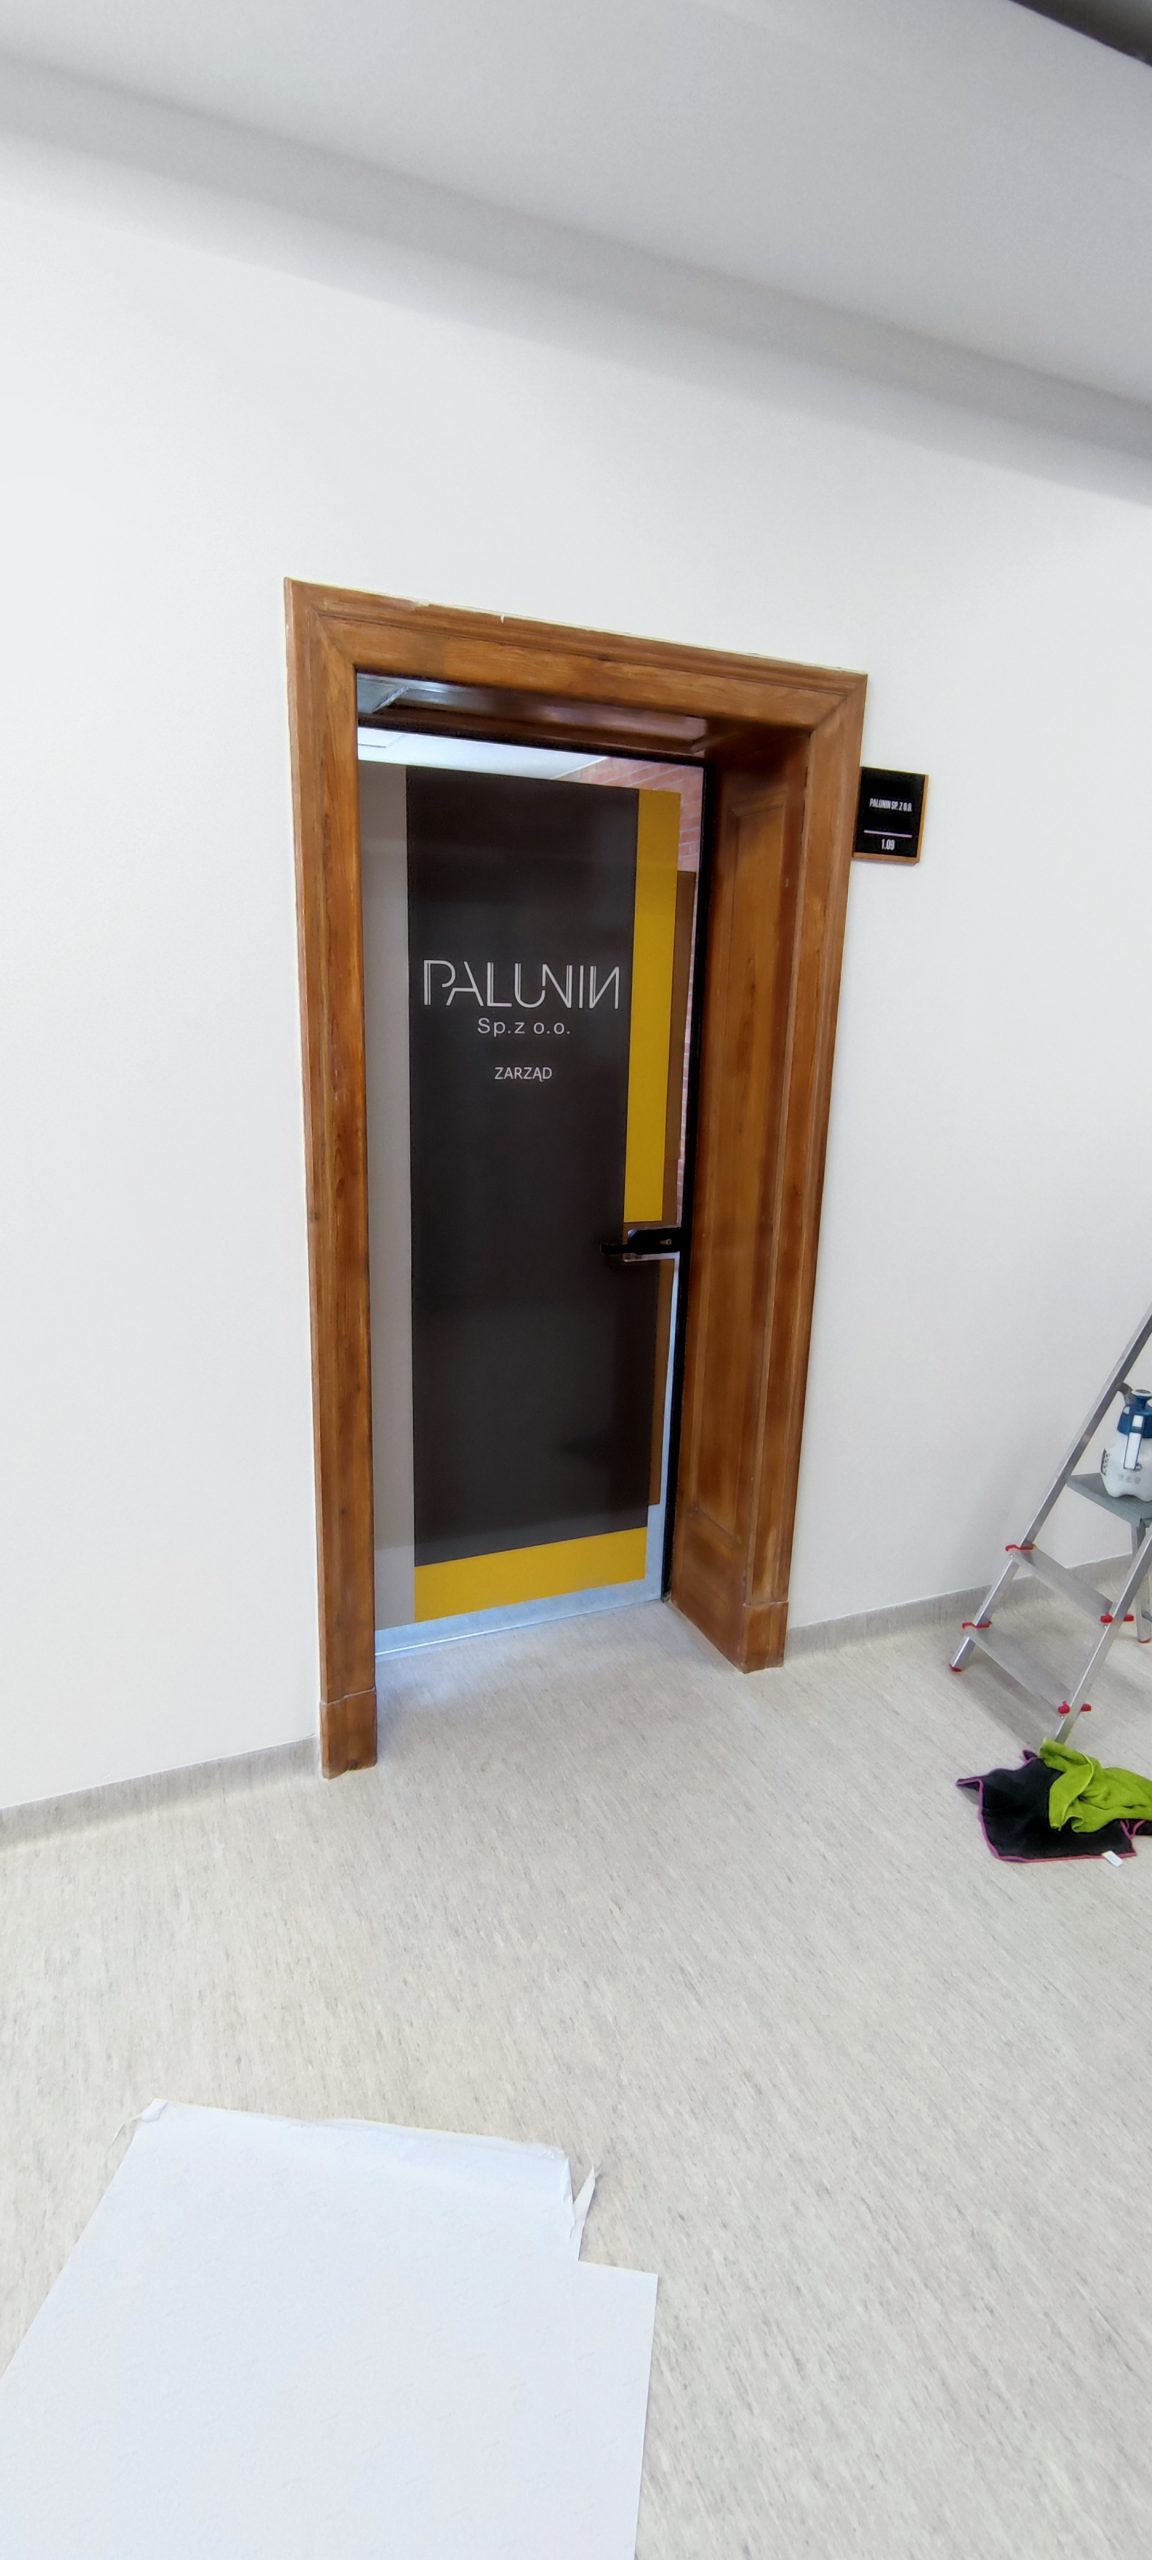 Oklejanie drzwi folią zadrukowanąi zalaminowaną dla Palunin w Bytomiu - www.mkdesign.pl